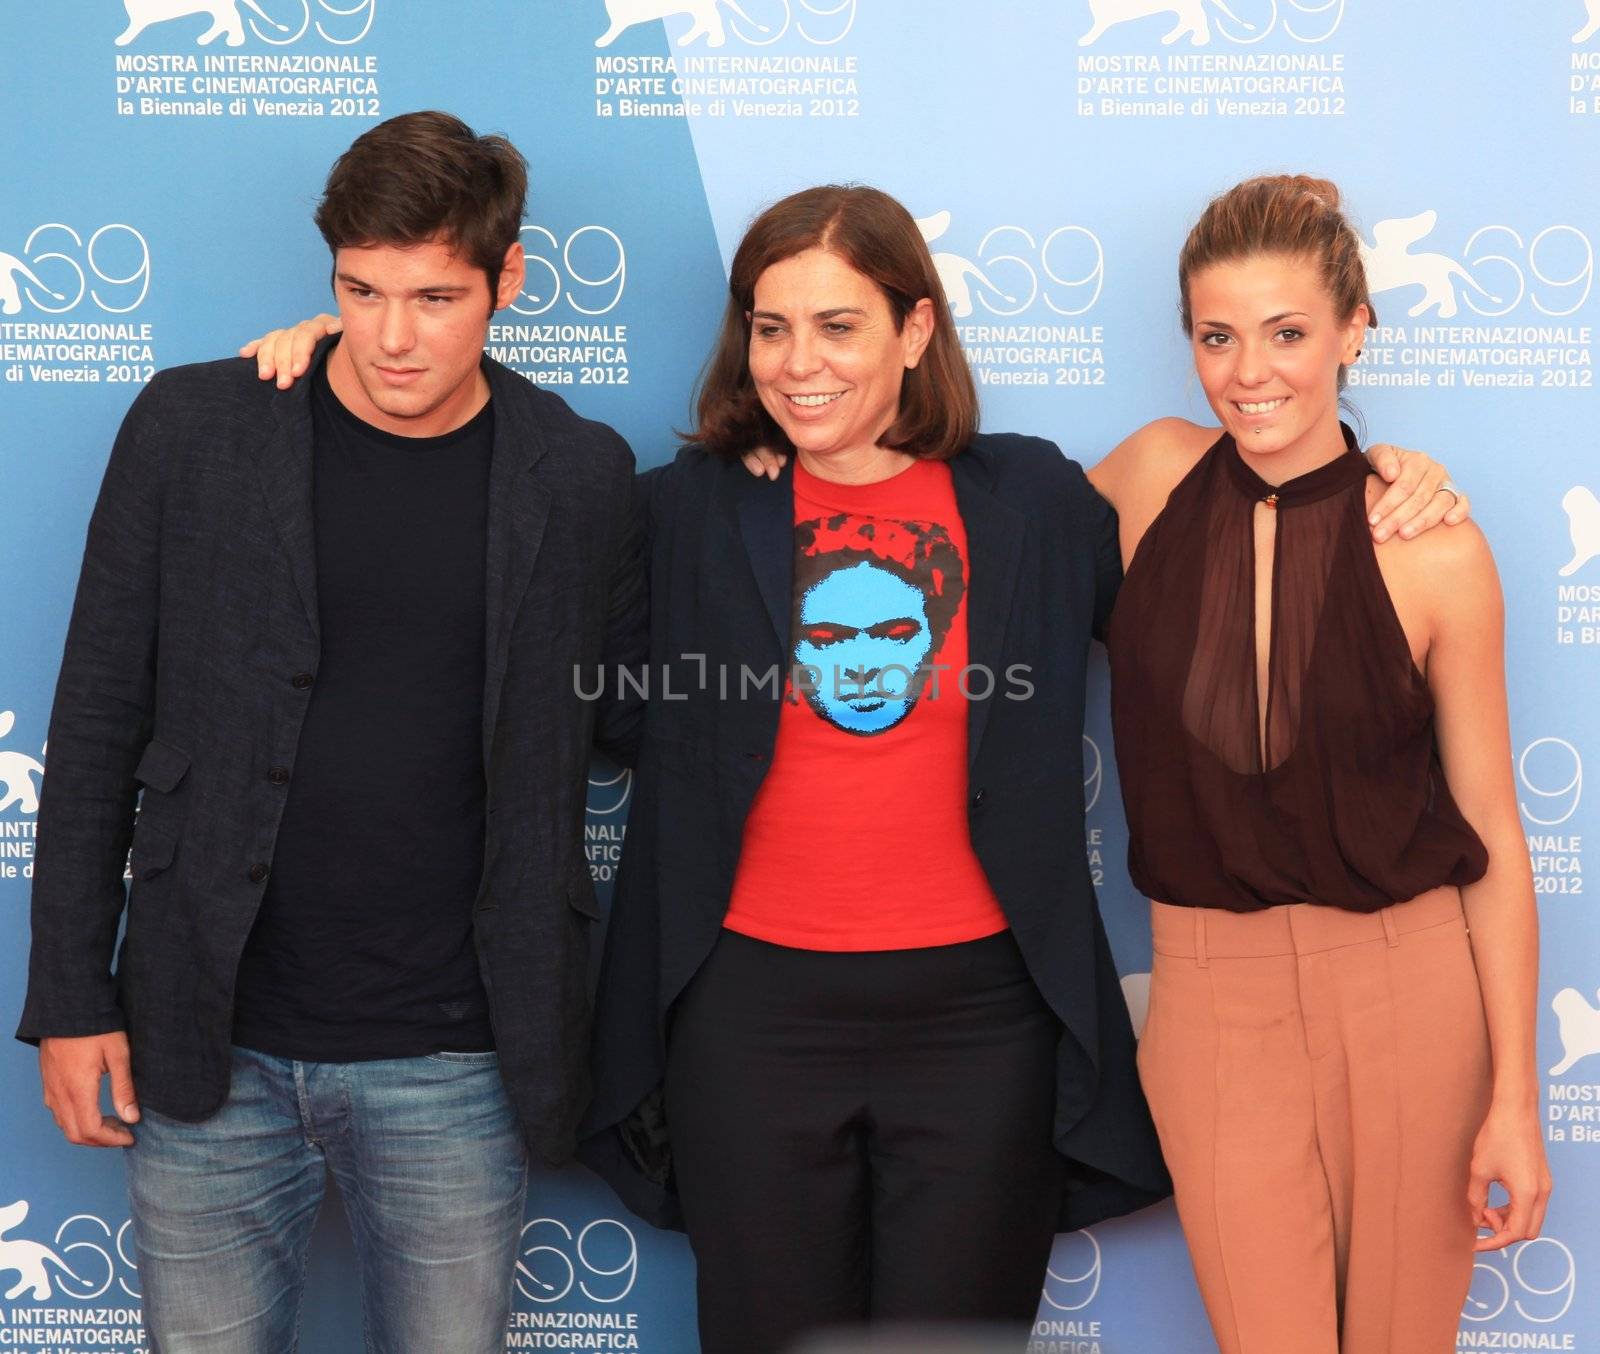 Filippo Scicchitano, Francesca Comencini and Giulia Valentini pose for photographers at 69th Venice Film Festival